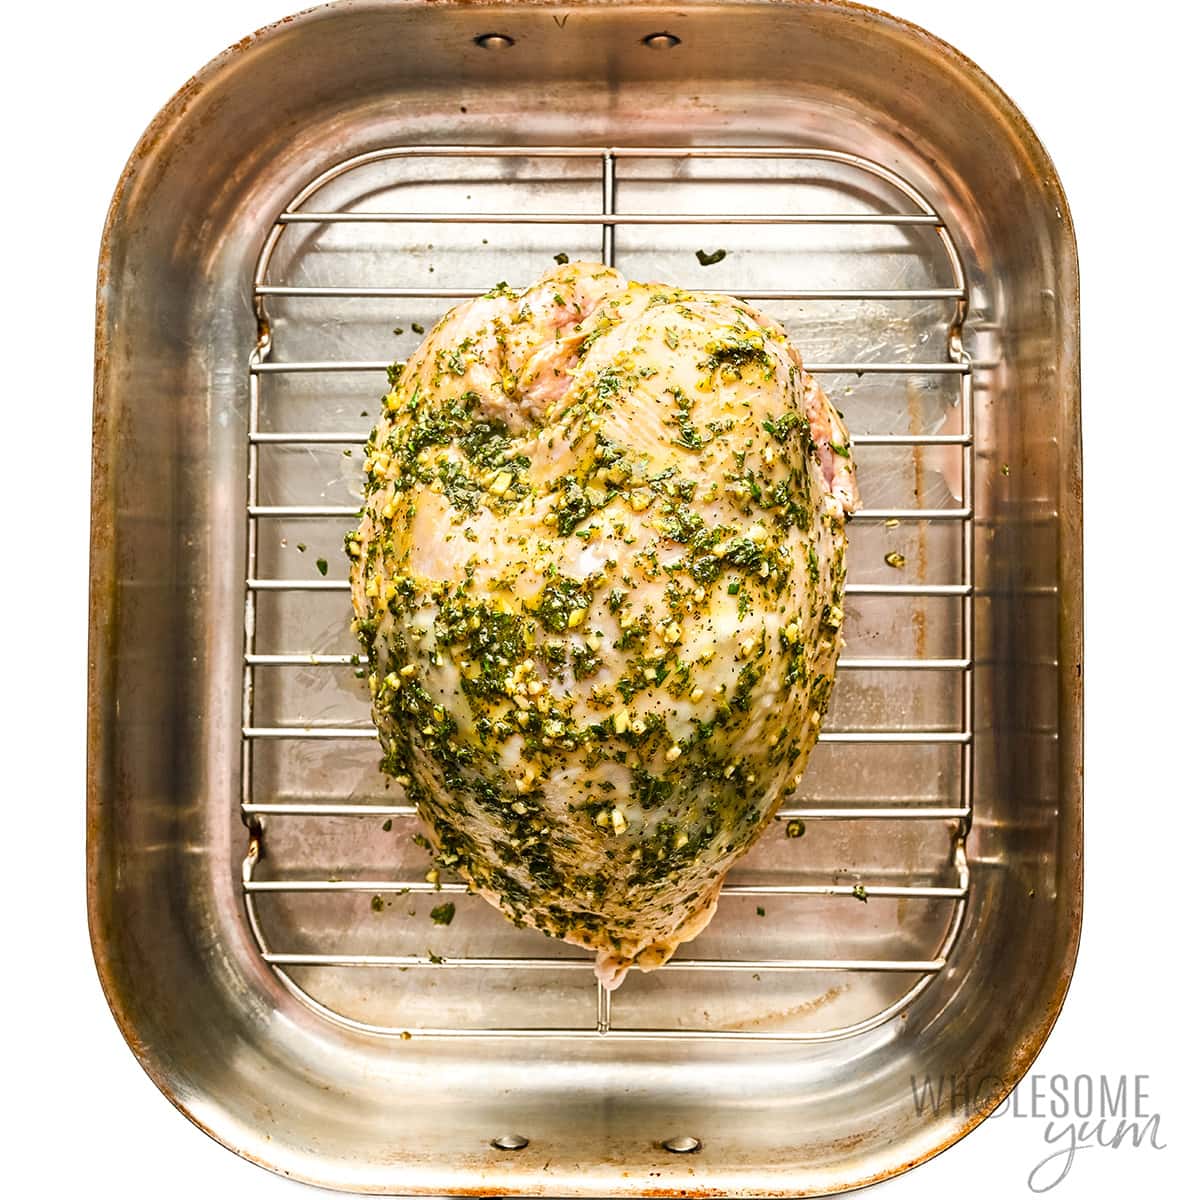 Place seasoned turkey breast in roasting pan.